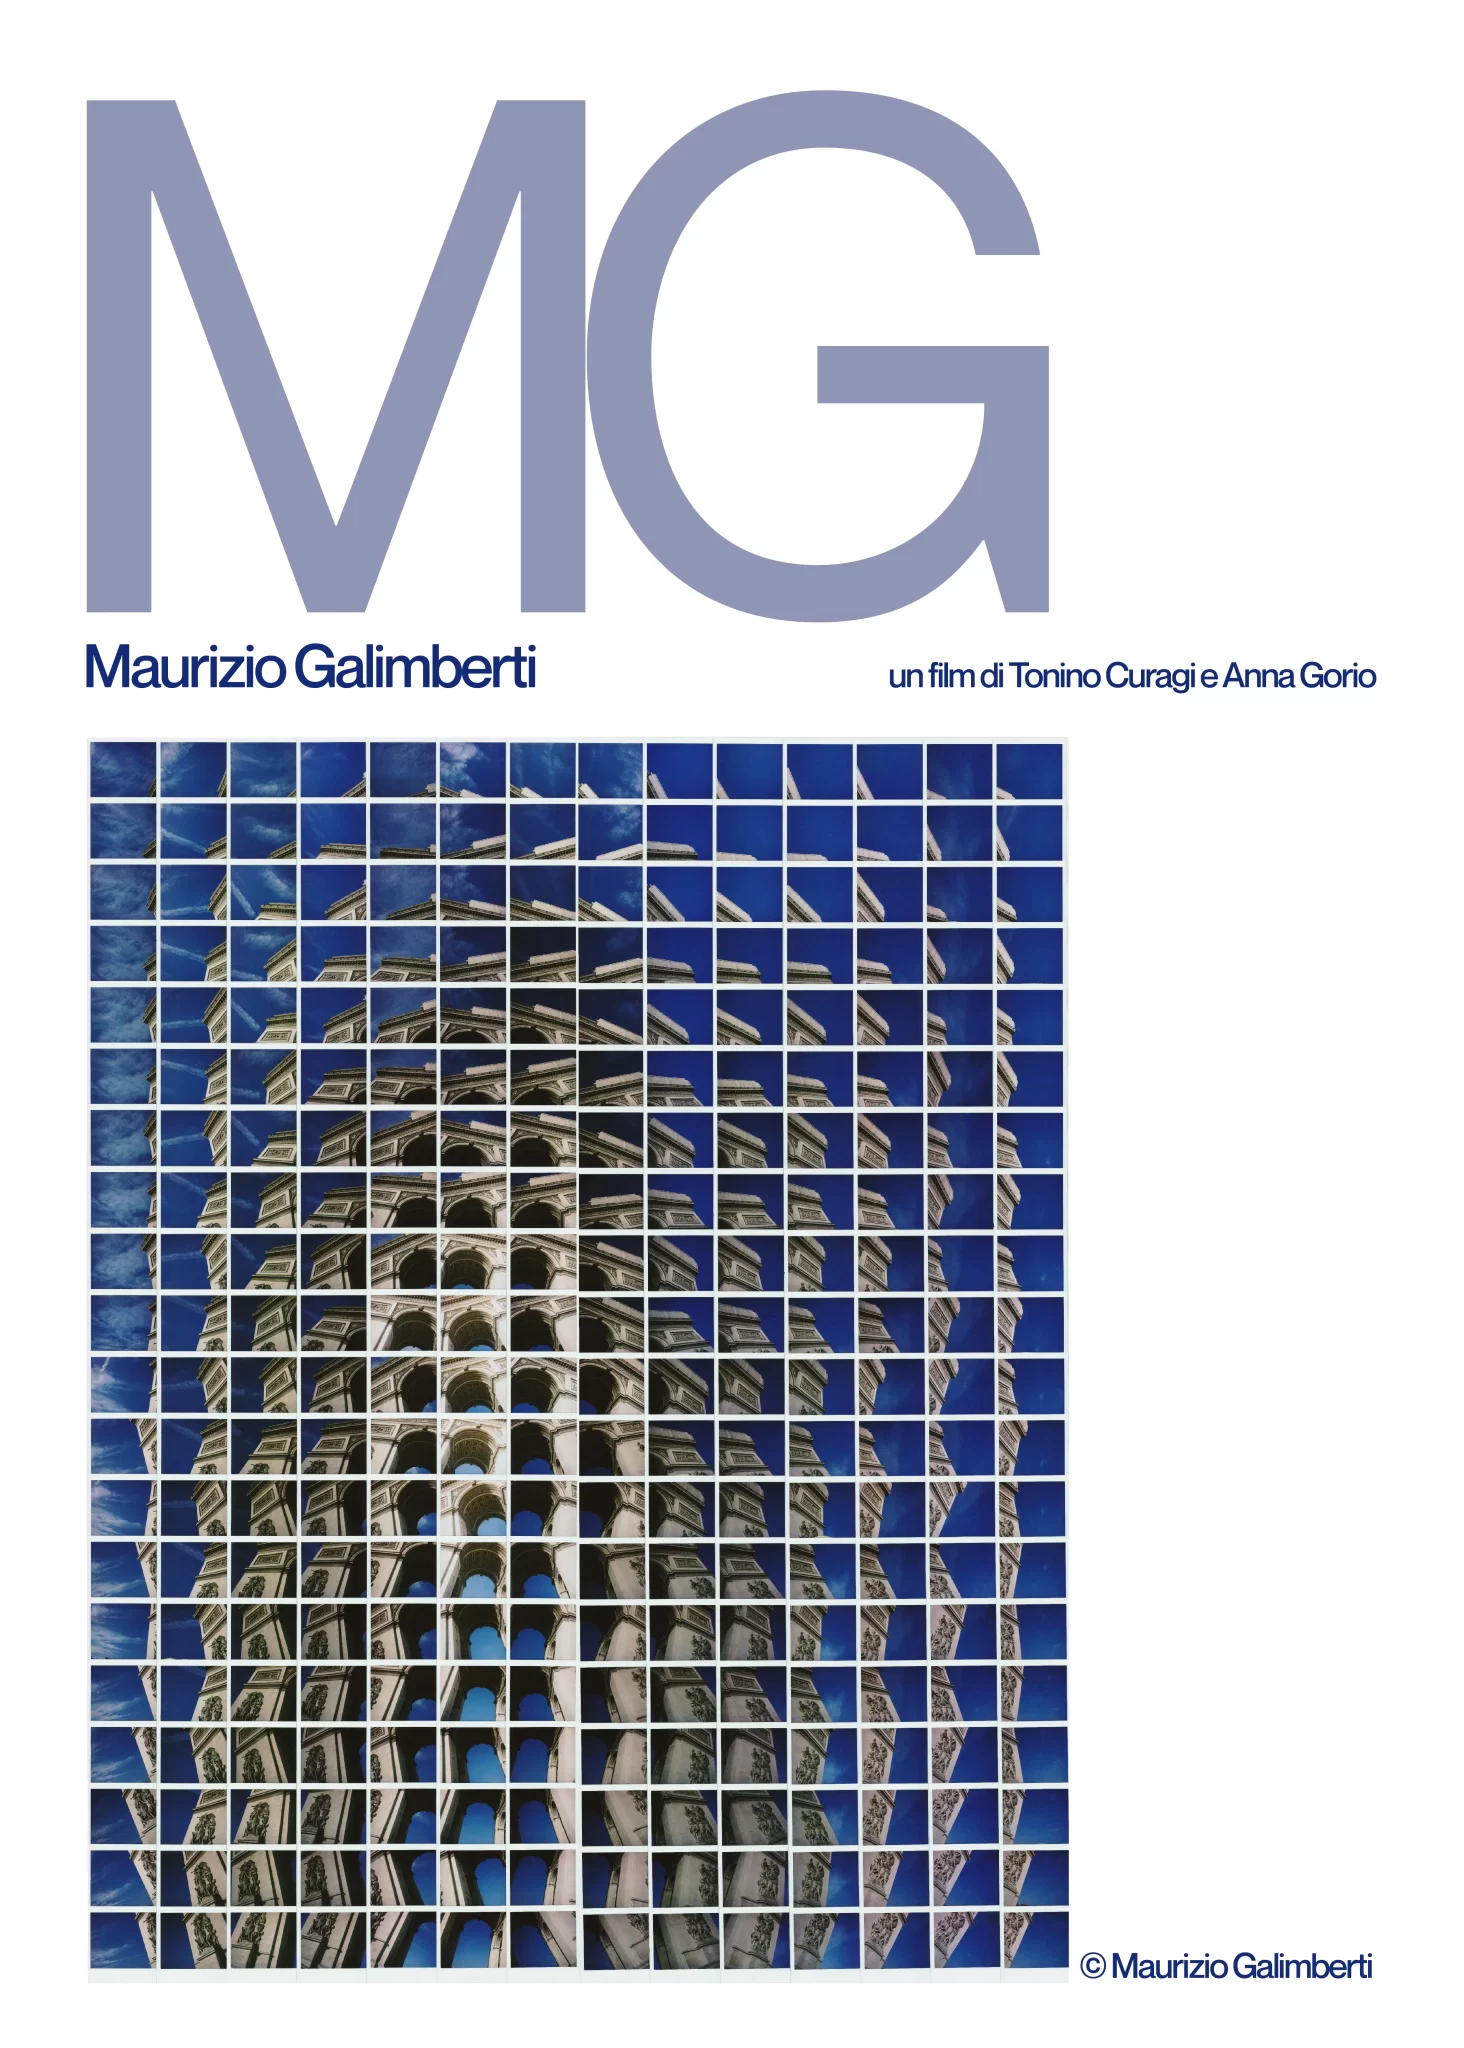 Locandina, MG, Maurizio Galimberti, un film di Tonino Curagi e Anna Gorio. Fotografia di un'architettura scattata da Maurizio Galimberti.